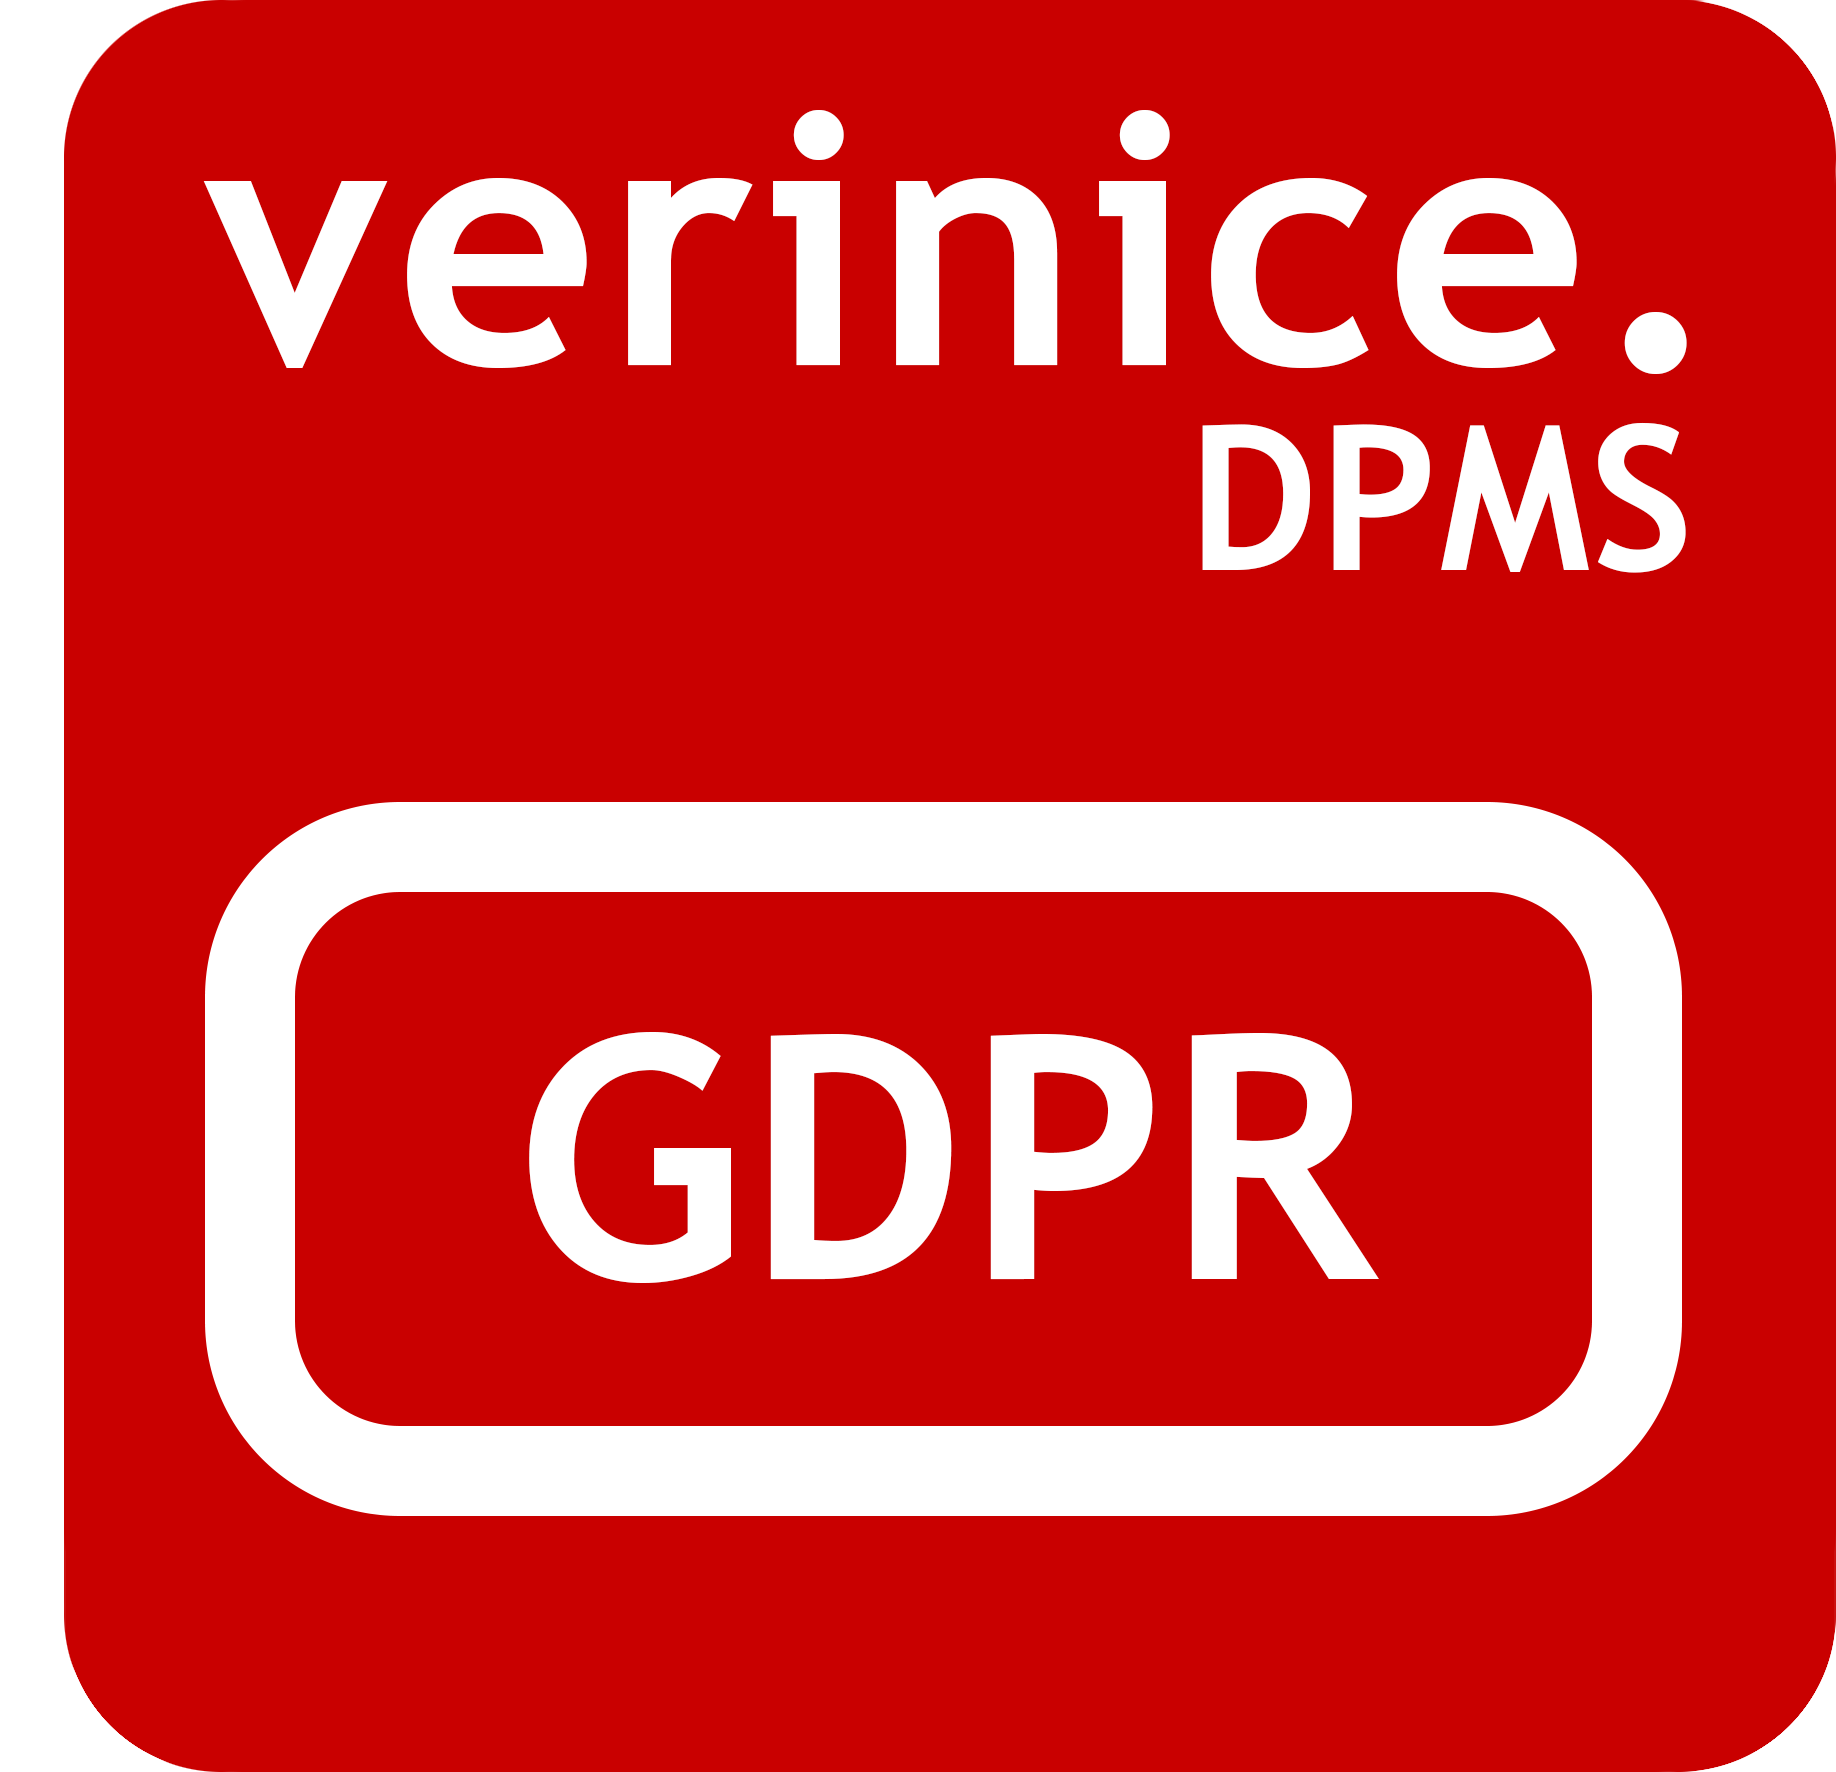 verinice DSMS - Ihr Datenschutzmanager